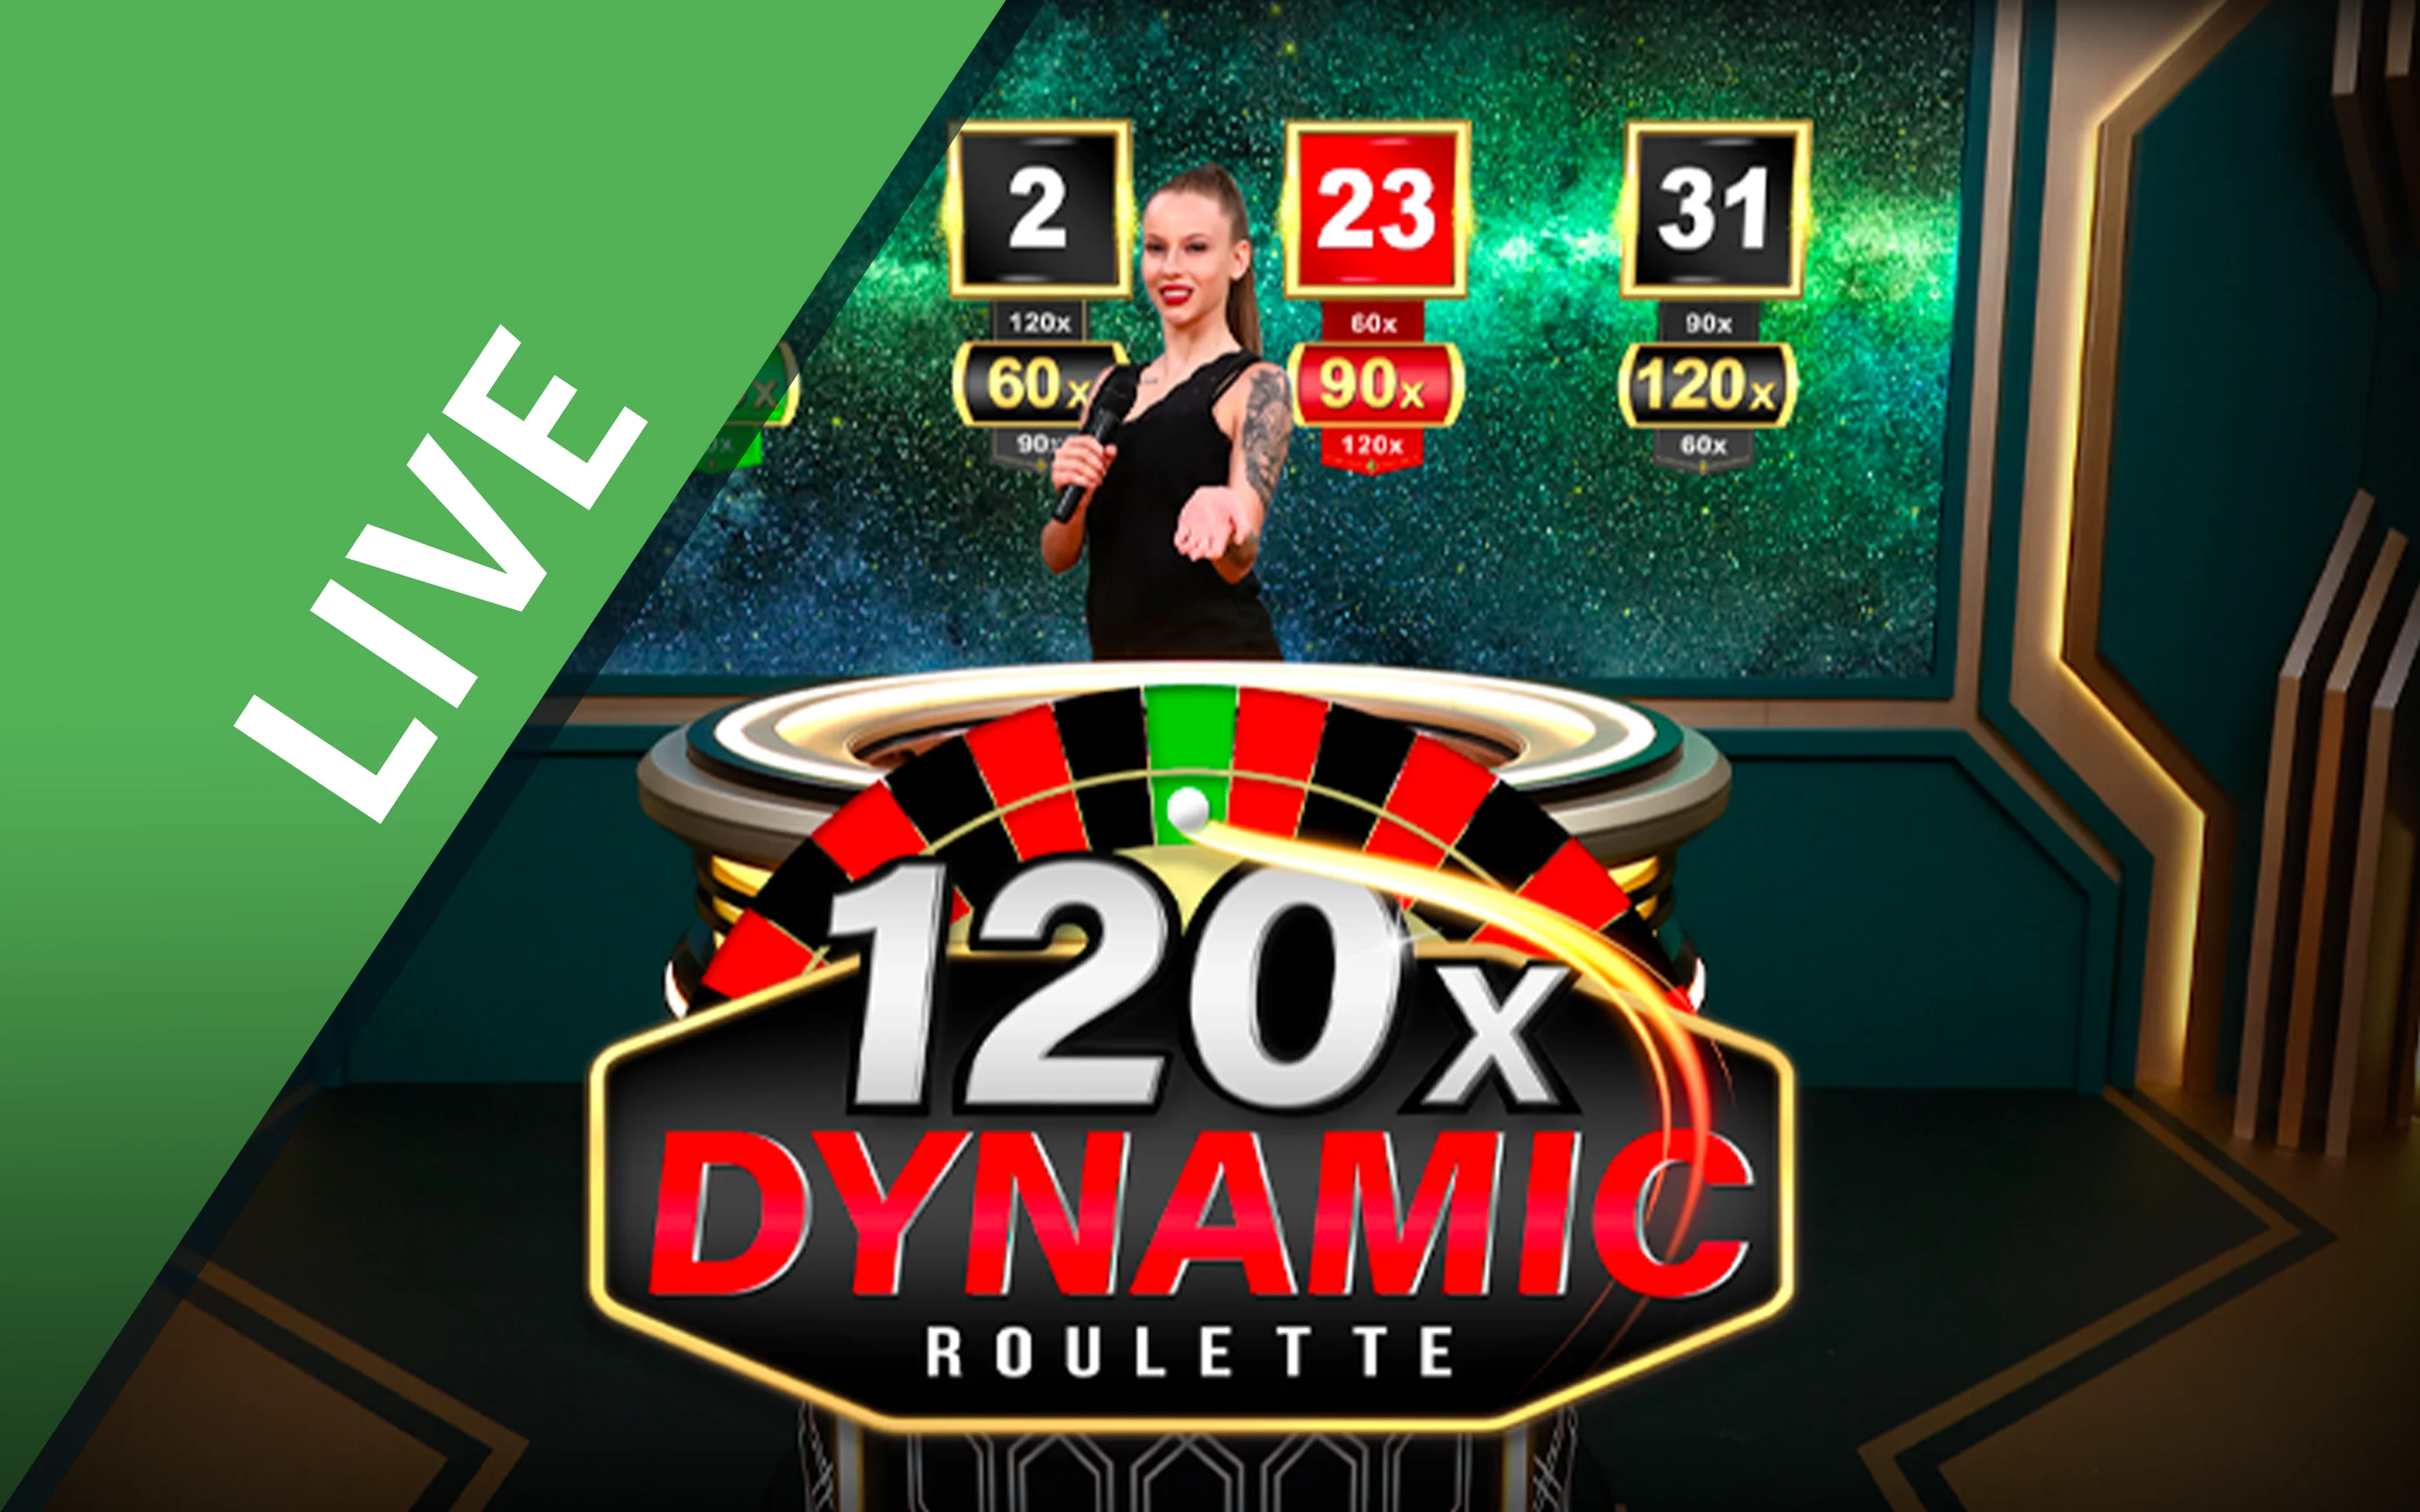 Chơi Dynamic Roulette 120x trên sòng bạc trực tuyến Starcasino.be